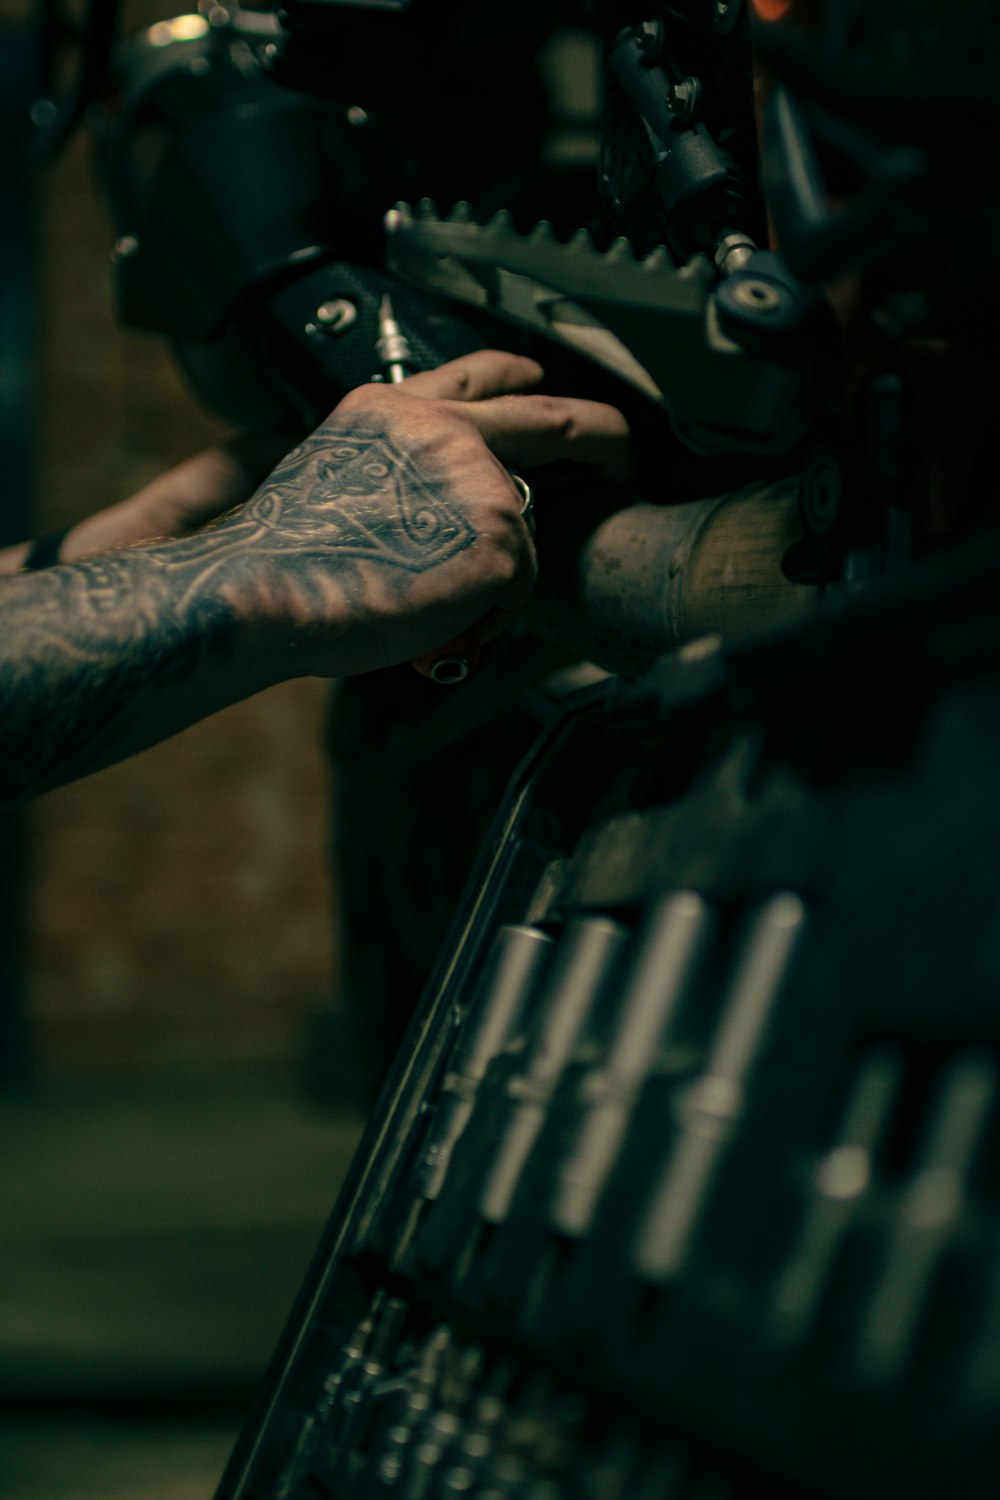 Un hombre con un tatuaje en el brazo trabajando en una motocicleta